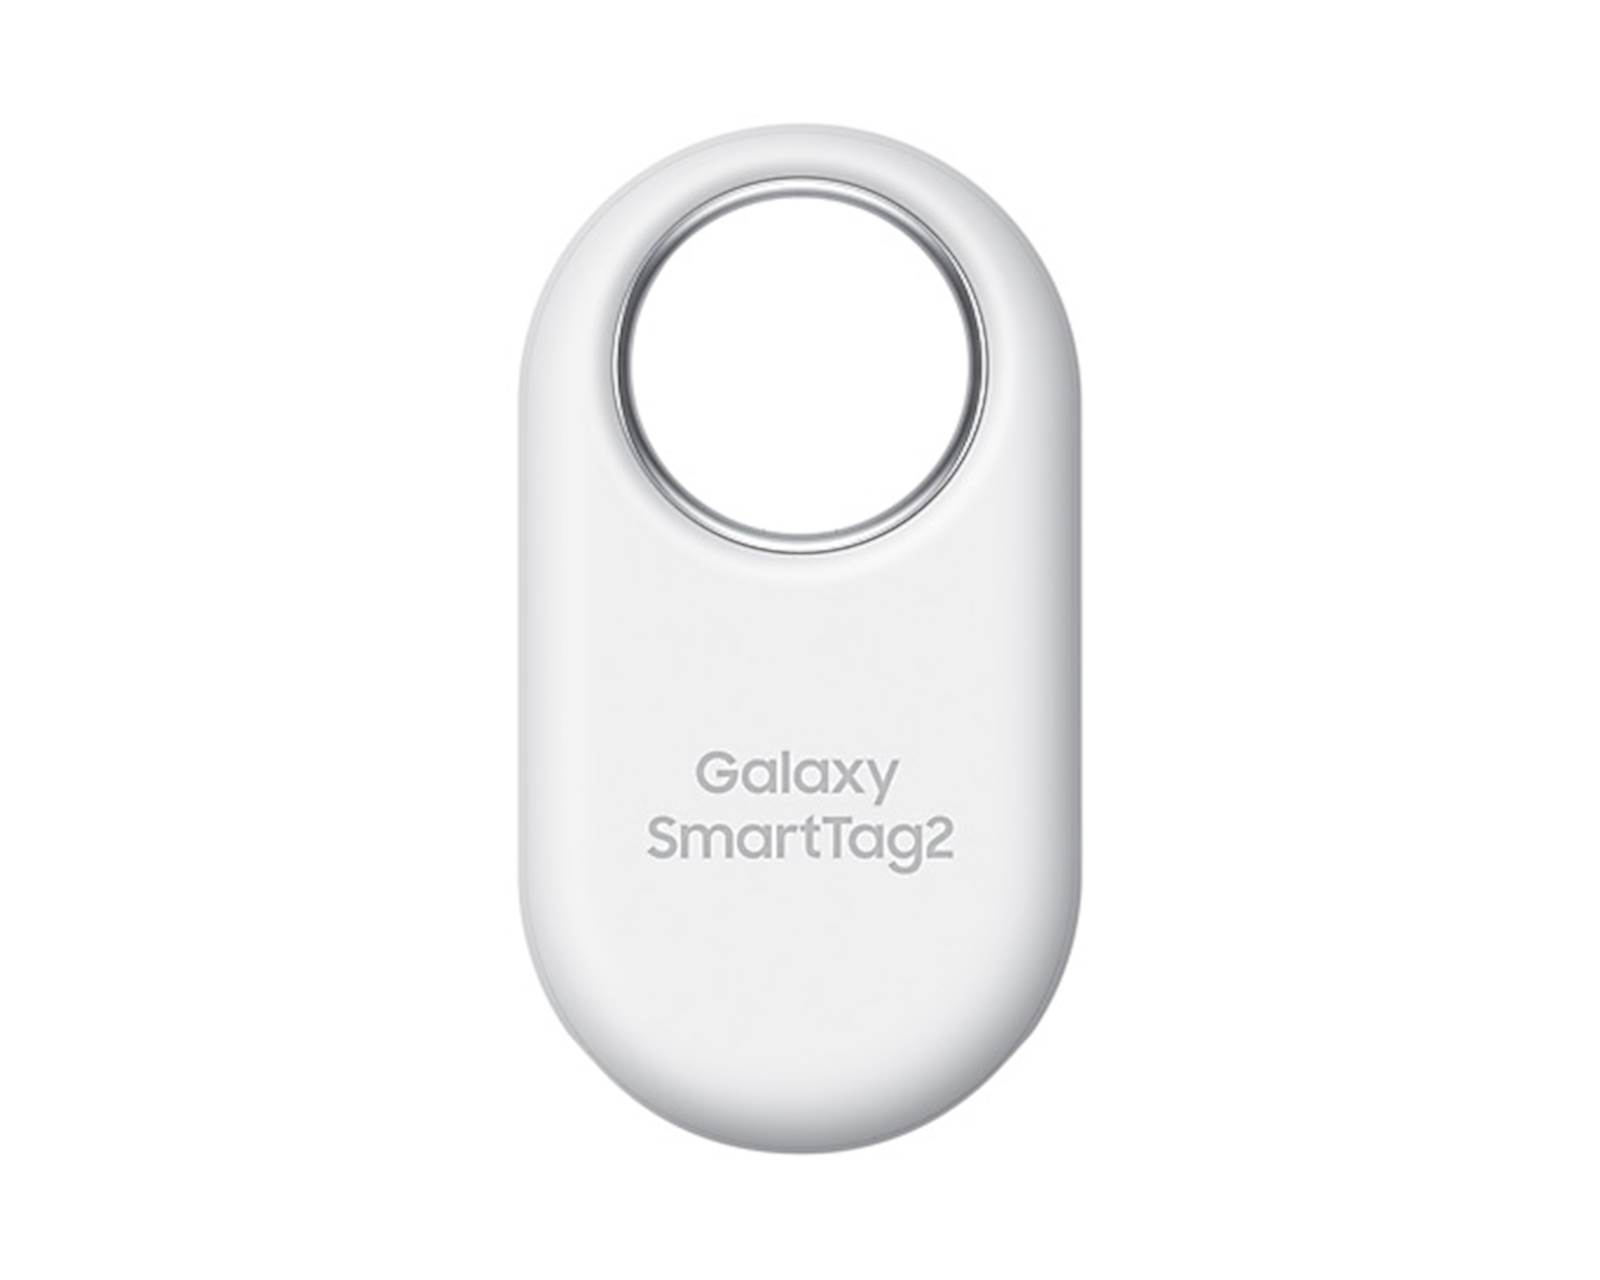 Samsung Galaxy SmartTag2 bel